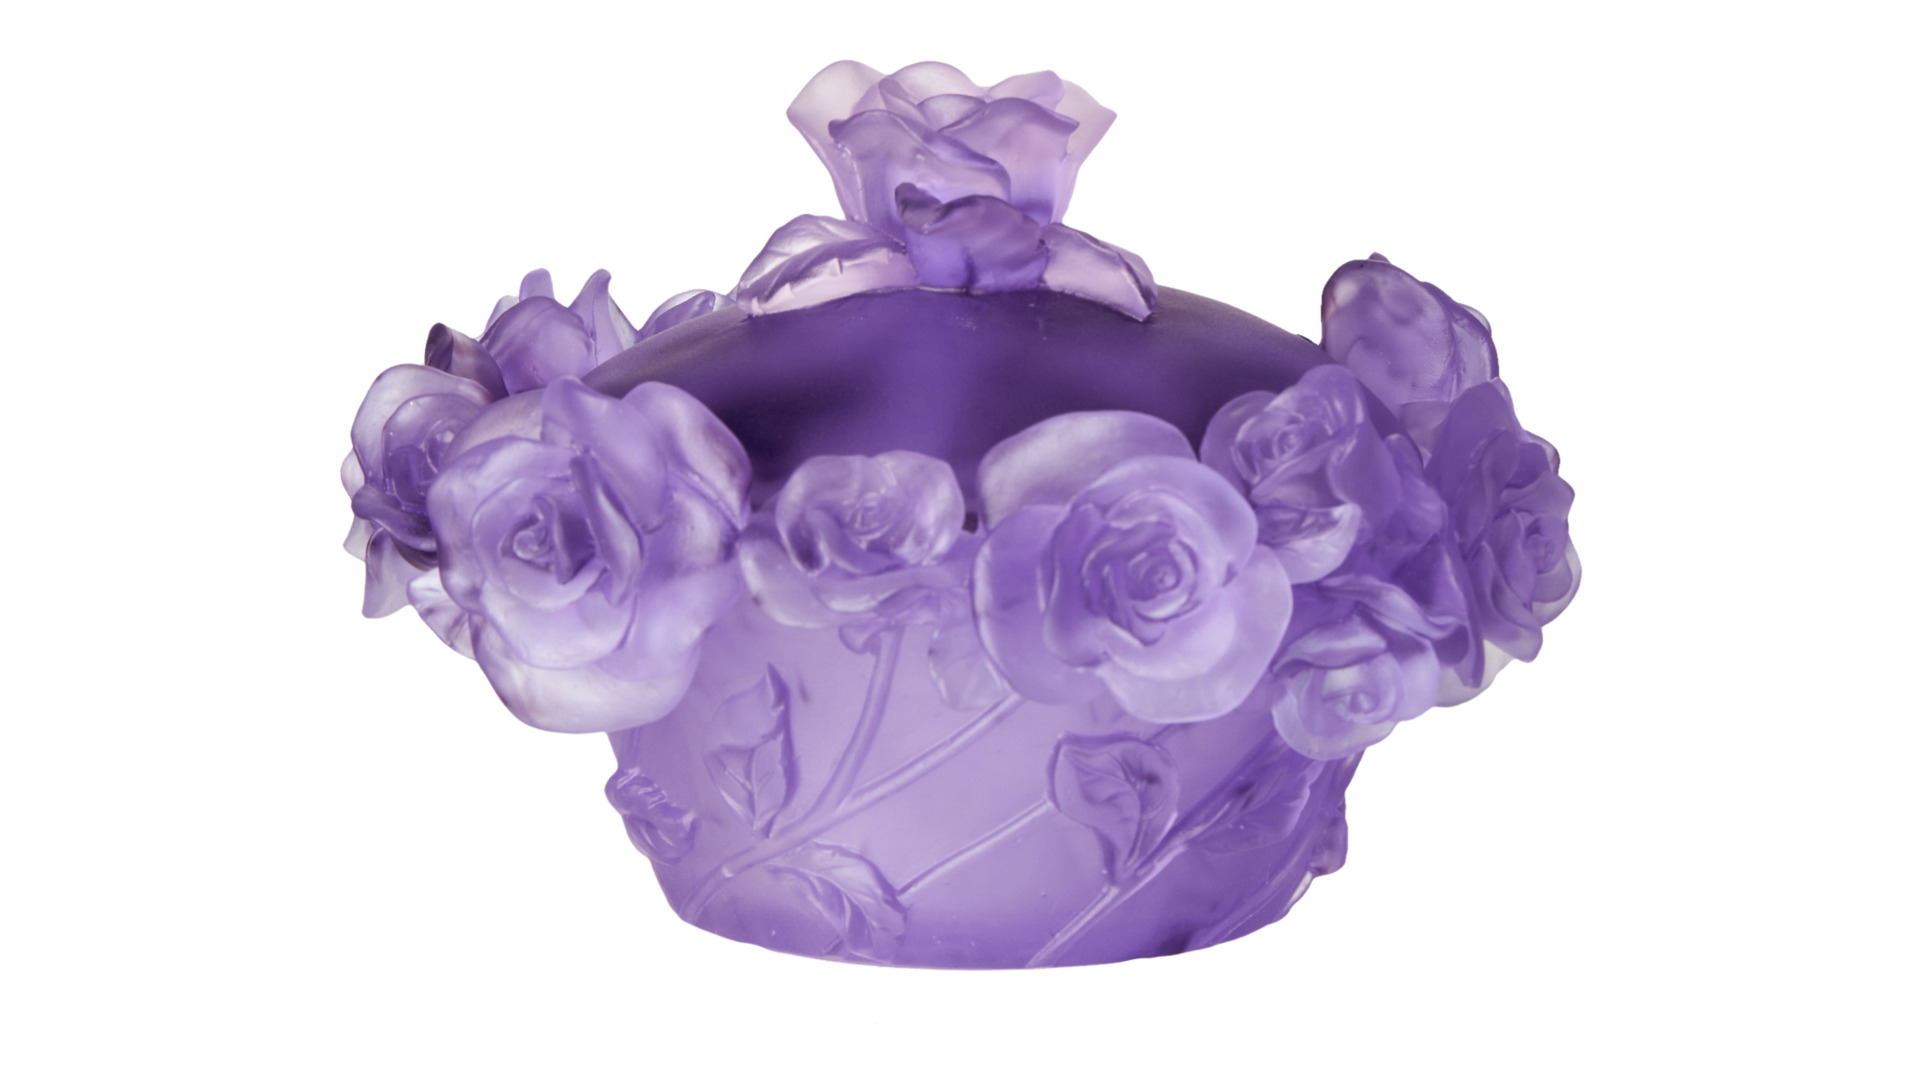 Конфетница с крышкой Decor de table Роза 17 см, хрусталь, фиолетовая